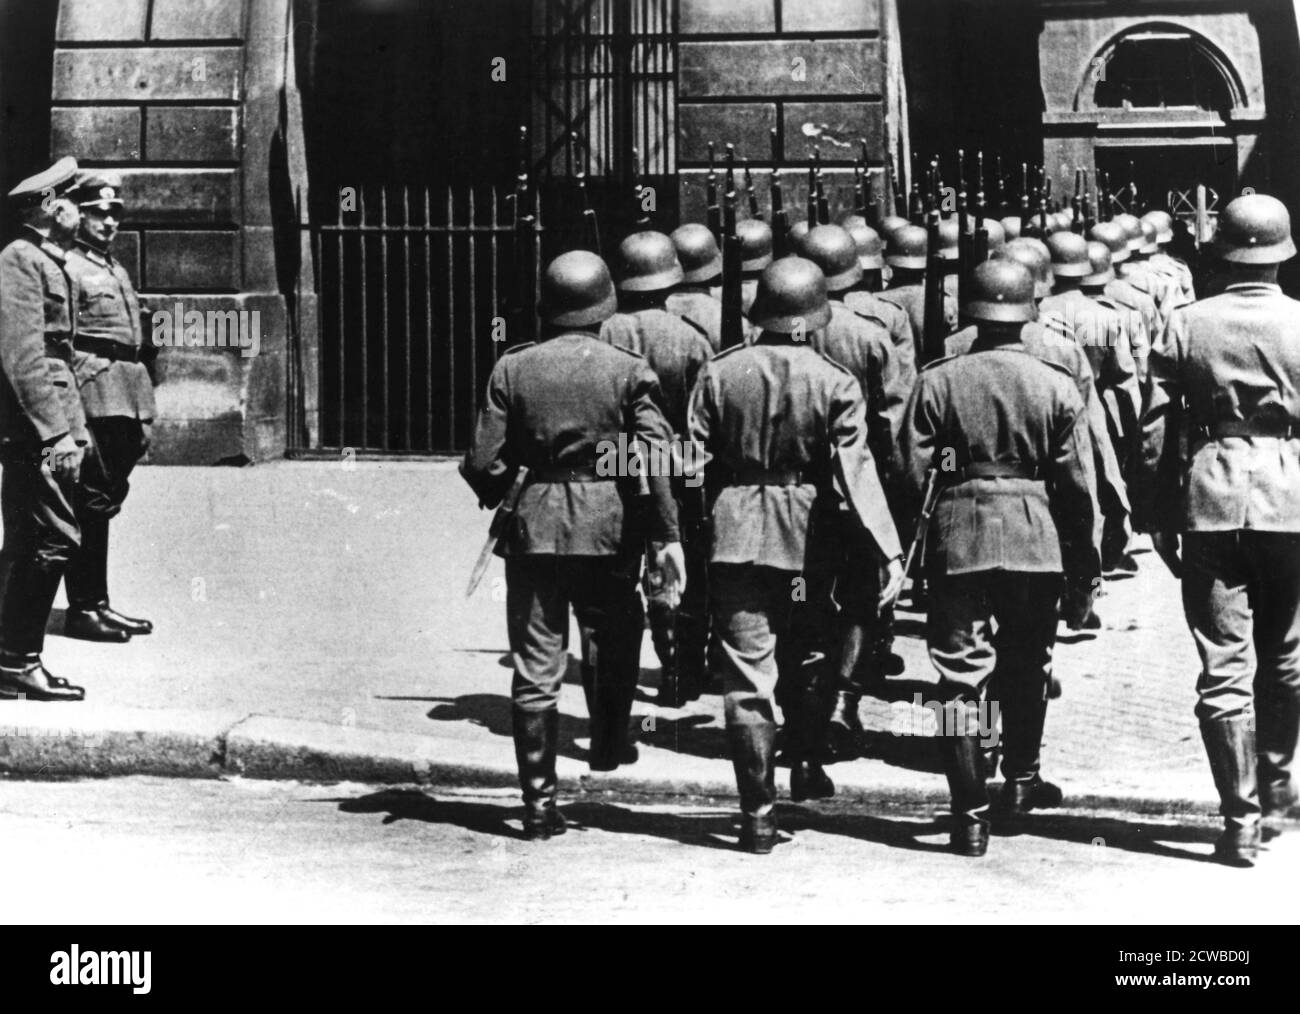 Cambio della guardia presso la sede tedesca a Parigi occupata, giugno 1940. Parigi si arrese agli invasori nazisti il 14 giugno 1940. Il fotografo è sconosciuto. Foto Stock